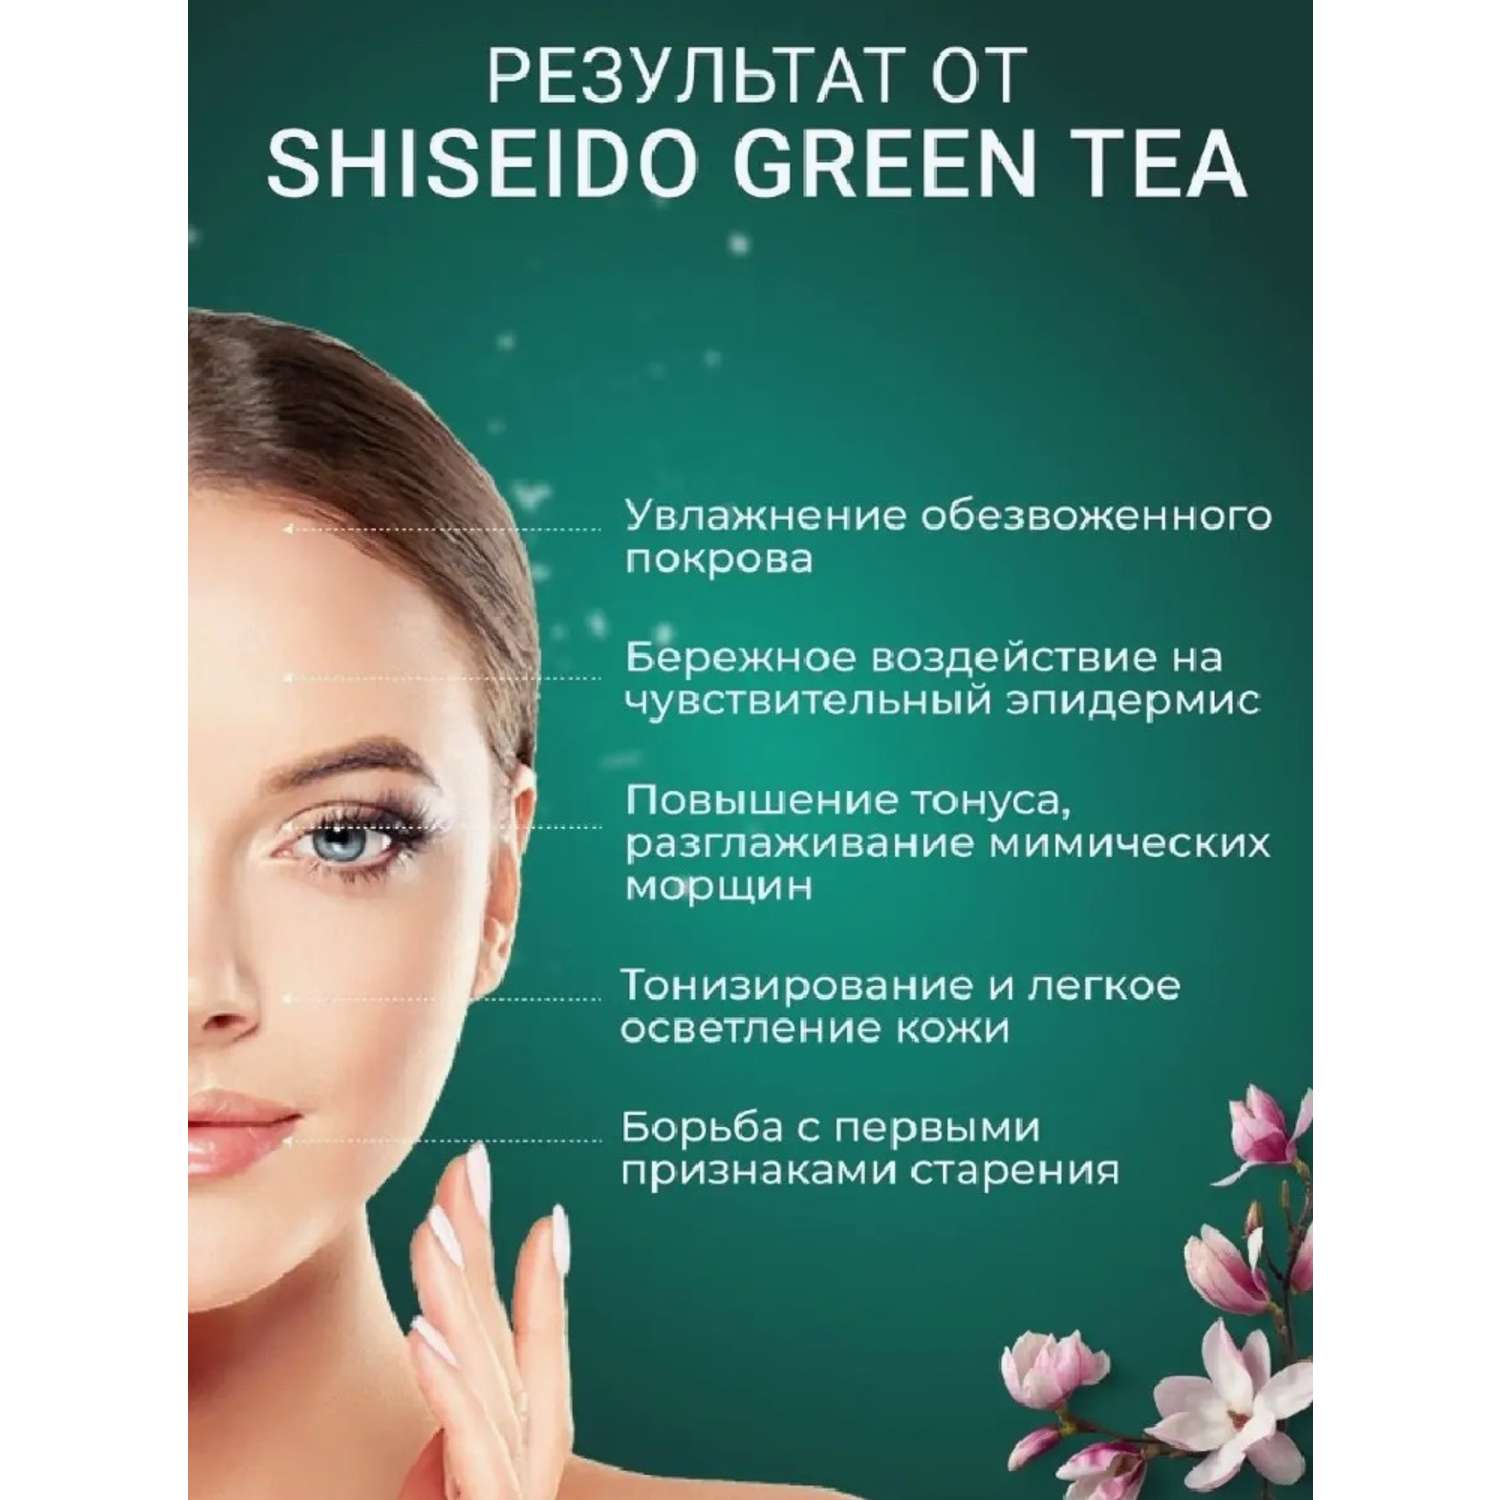 Гель-скатка-пиллинг CASTLELADY SHISEIDO Green Tea для лица интенсивный - фото 2